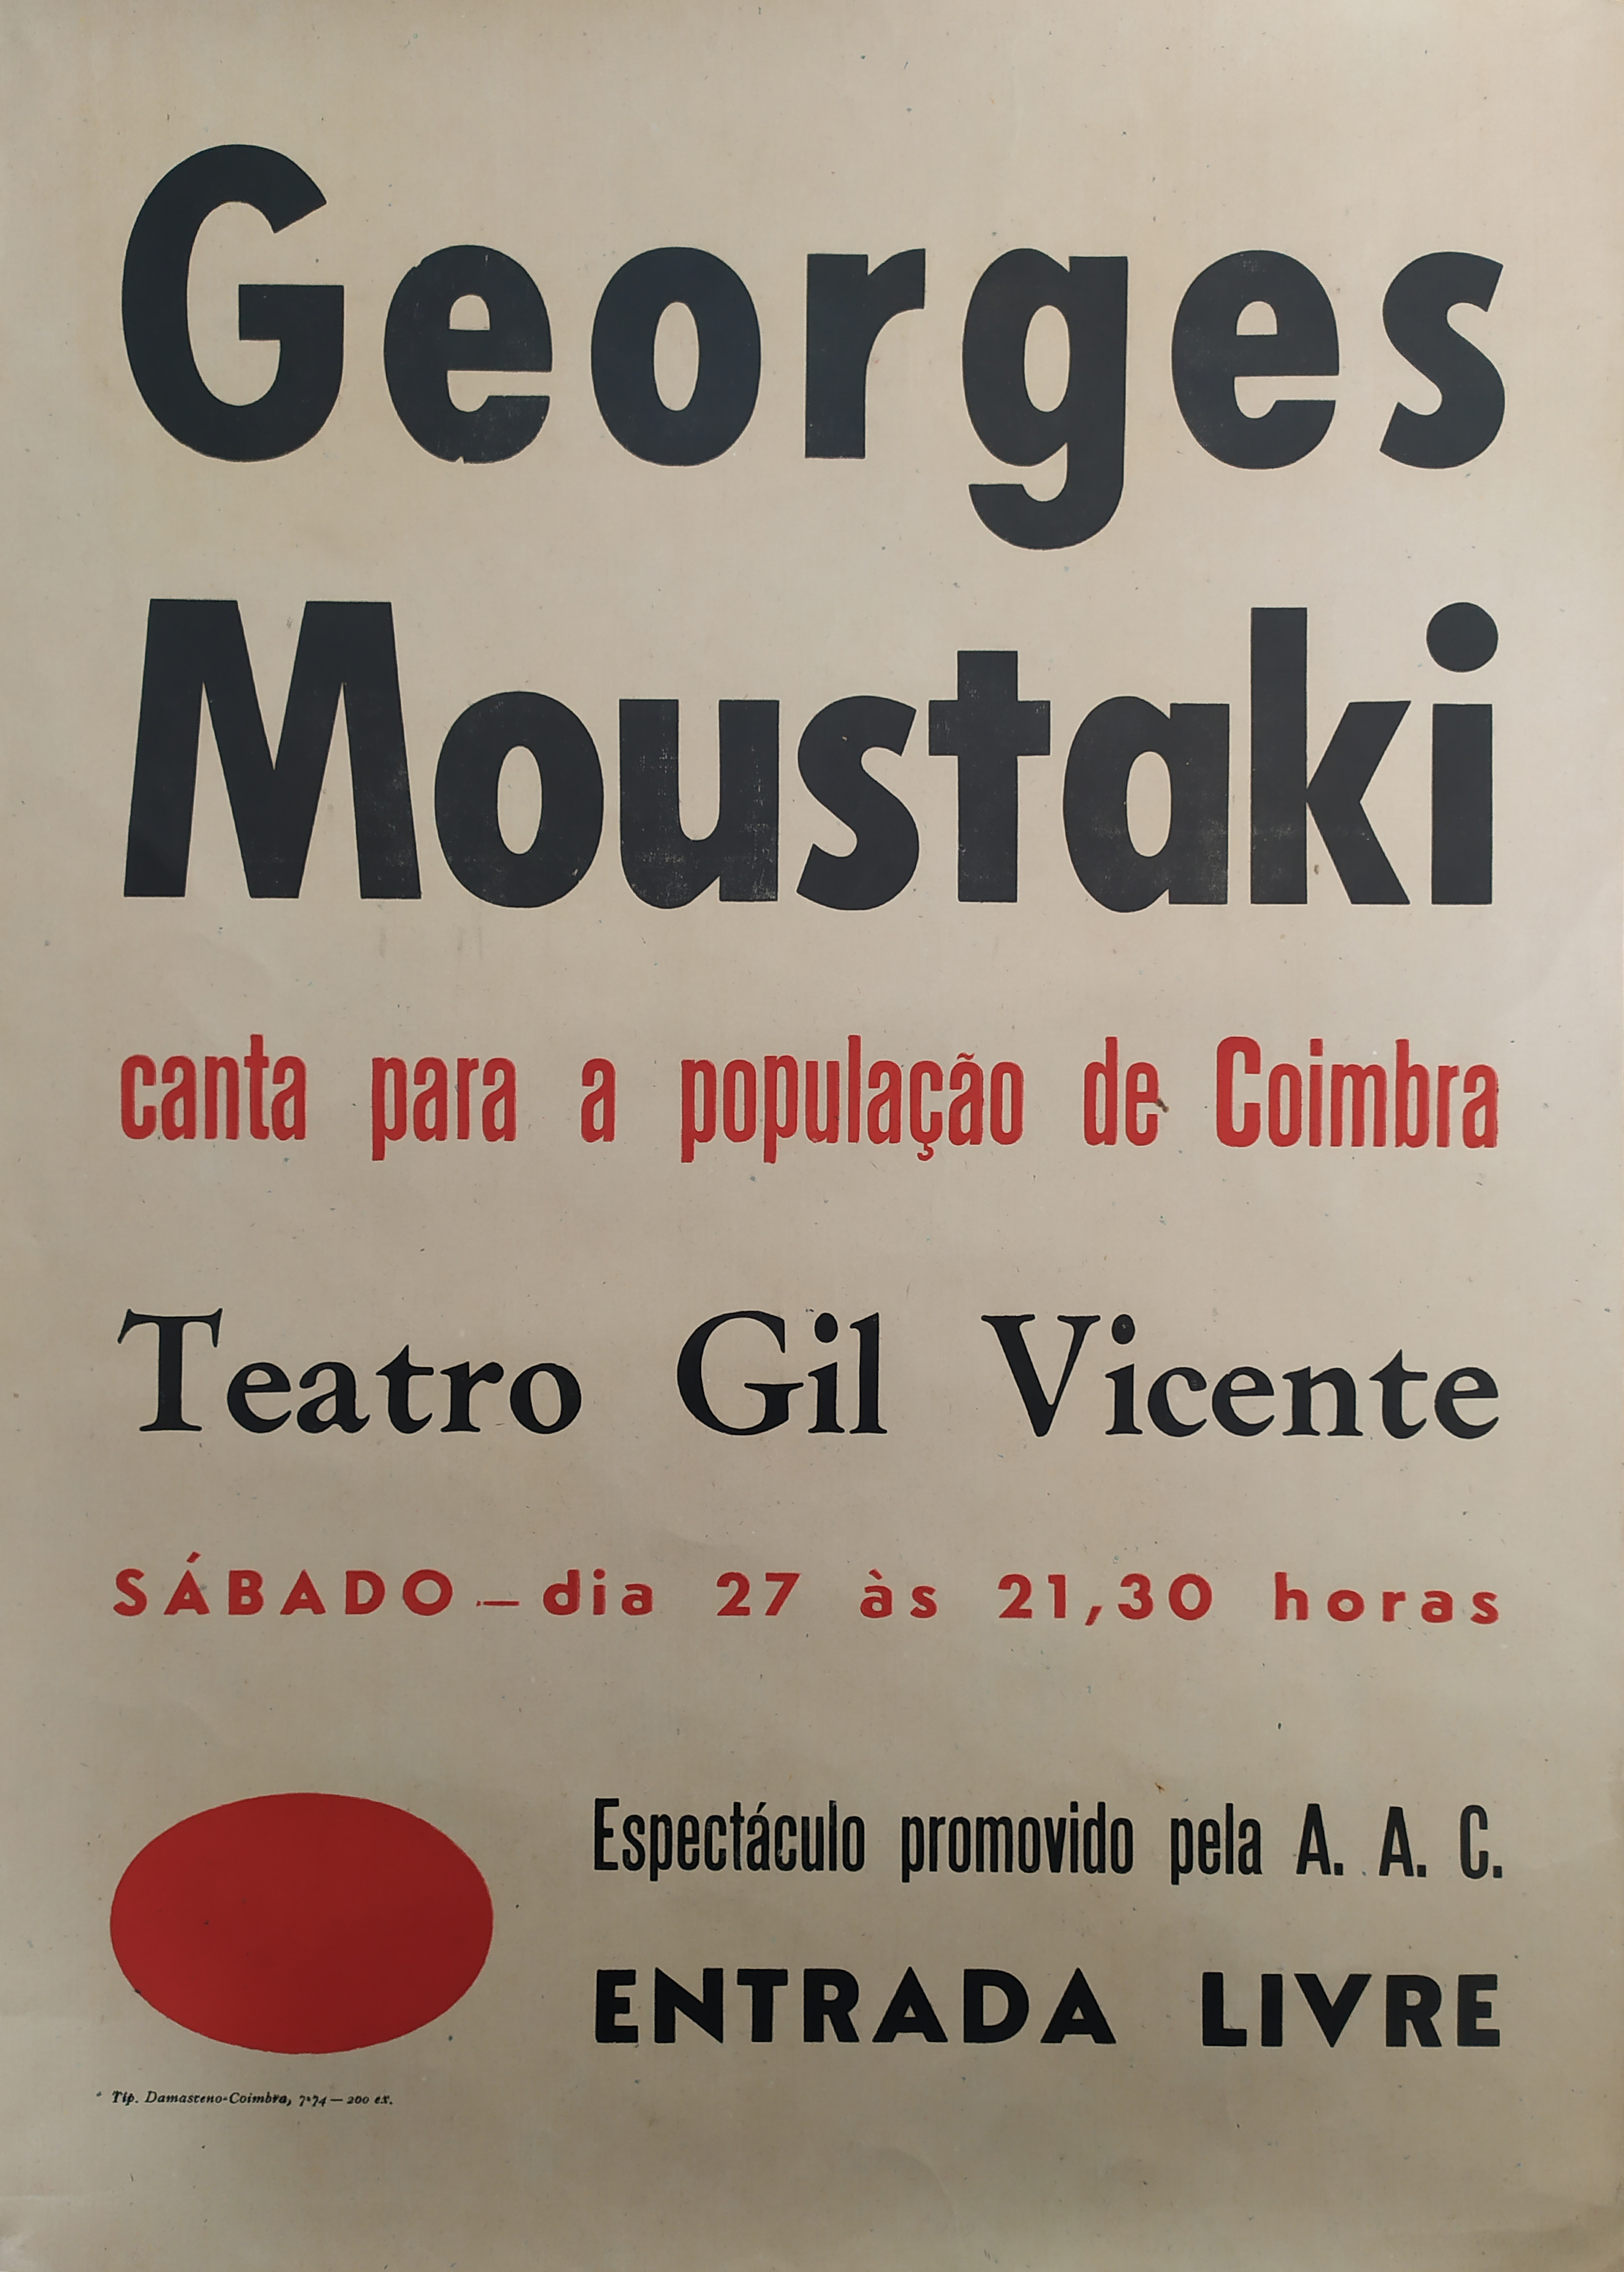 Georges Moustaki canta para a população de Coimbra